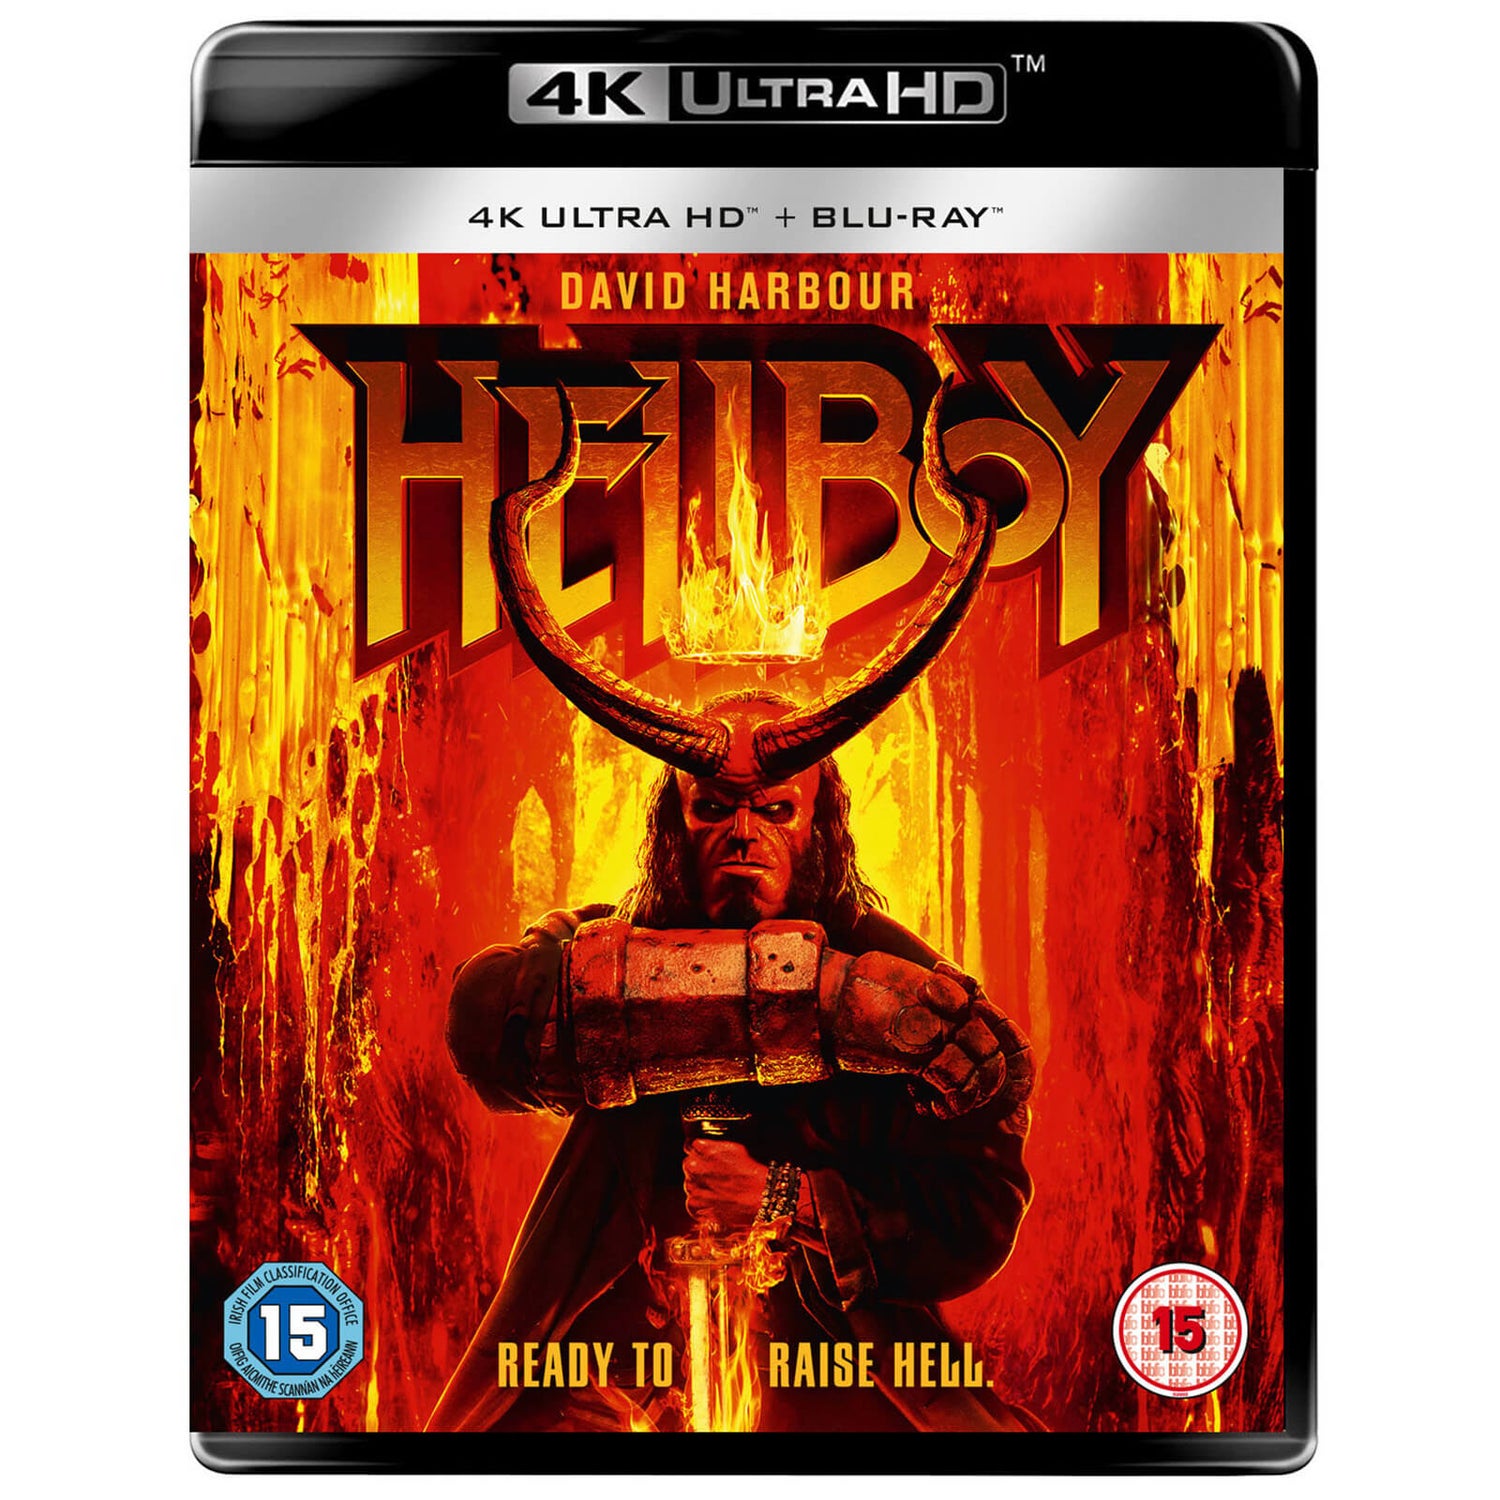 Hellboy - 4K Ultra HD (Includes Blu-ray)